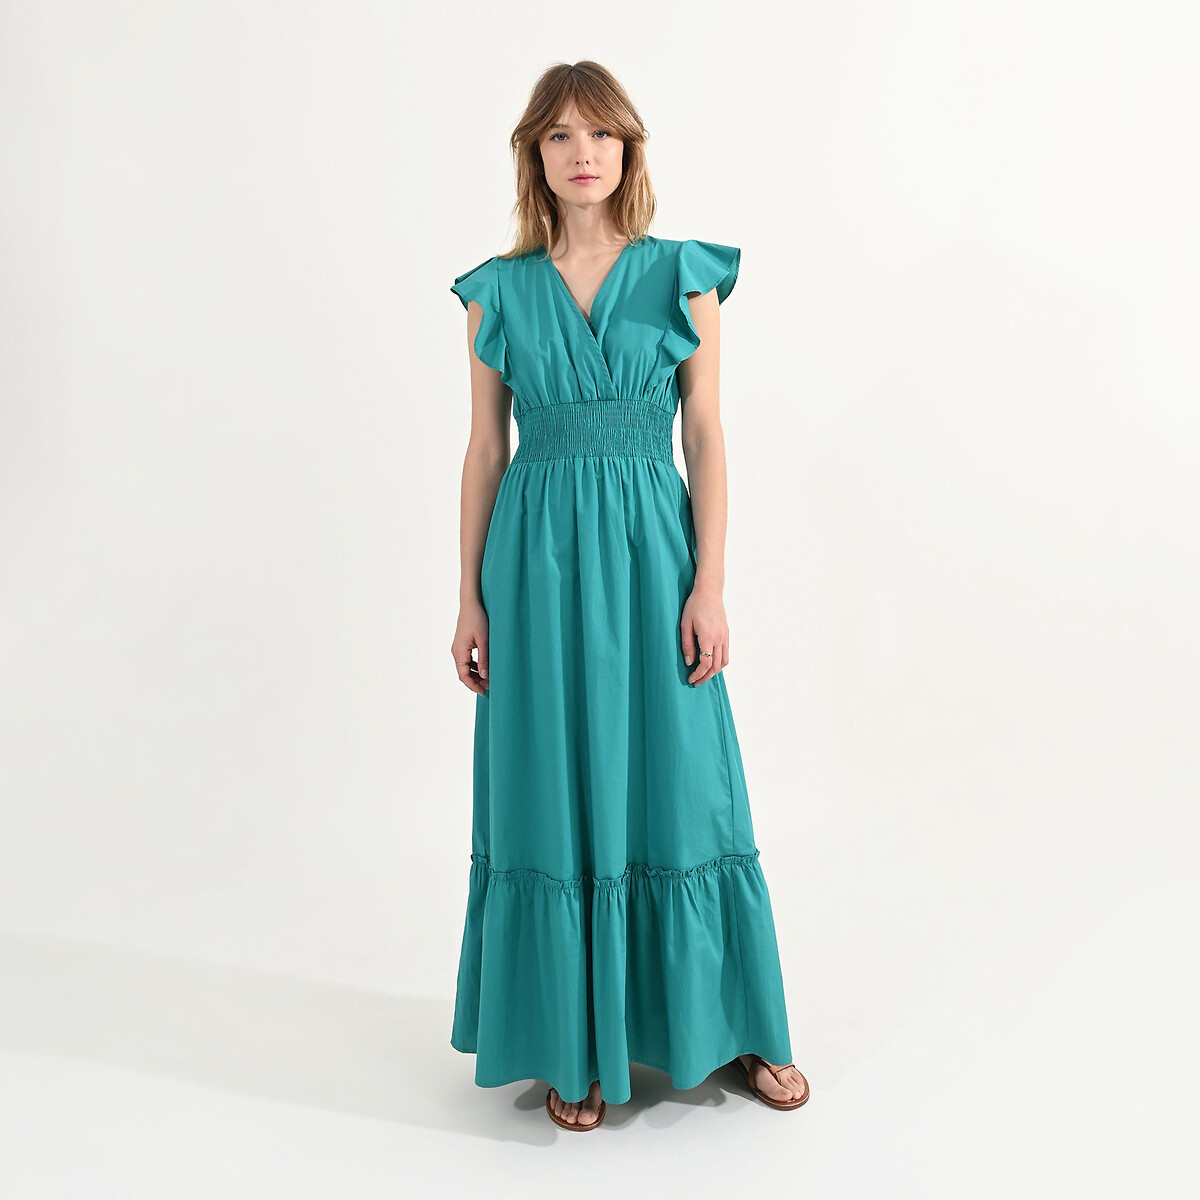 Платье длинное с воланами вырез с запахом M зеленый платье с принтом вырез с воланами xl синий